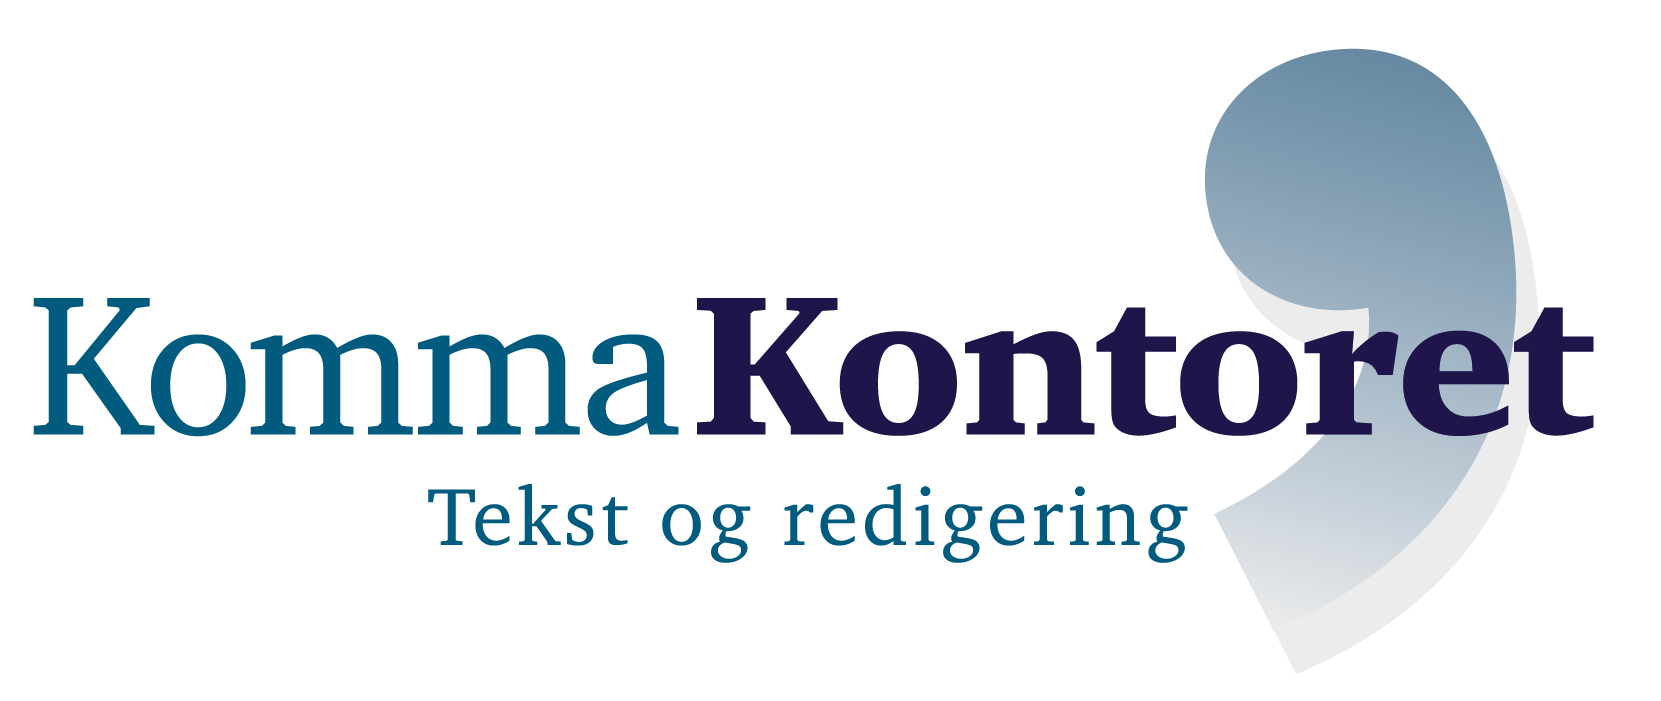 KommaKontoret_logo